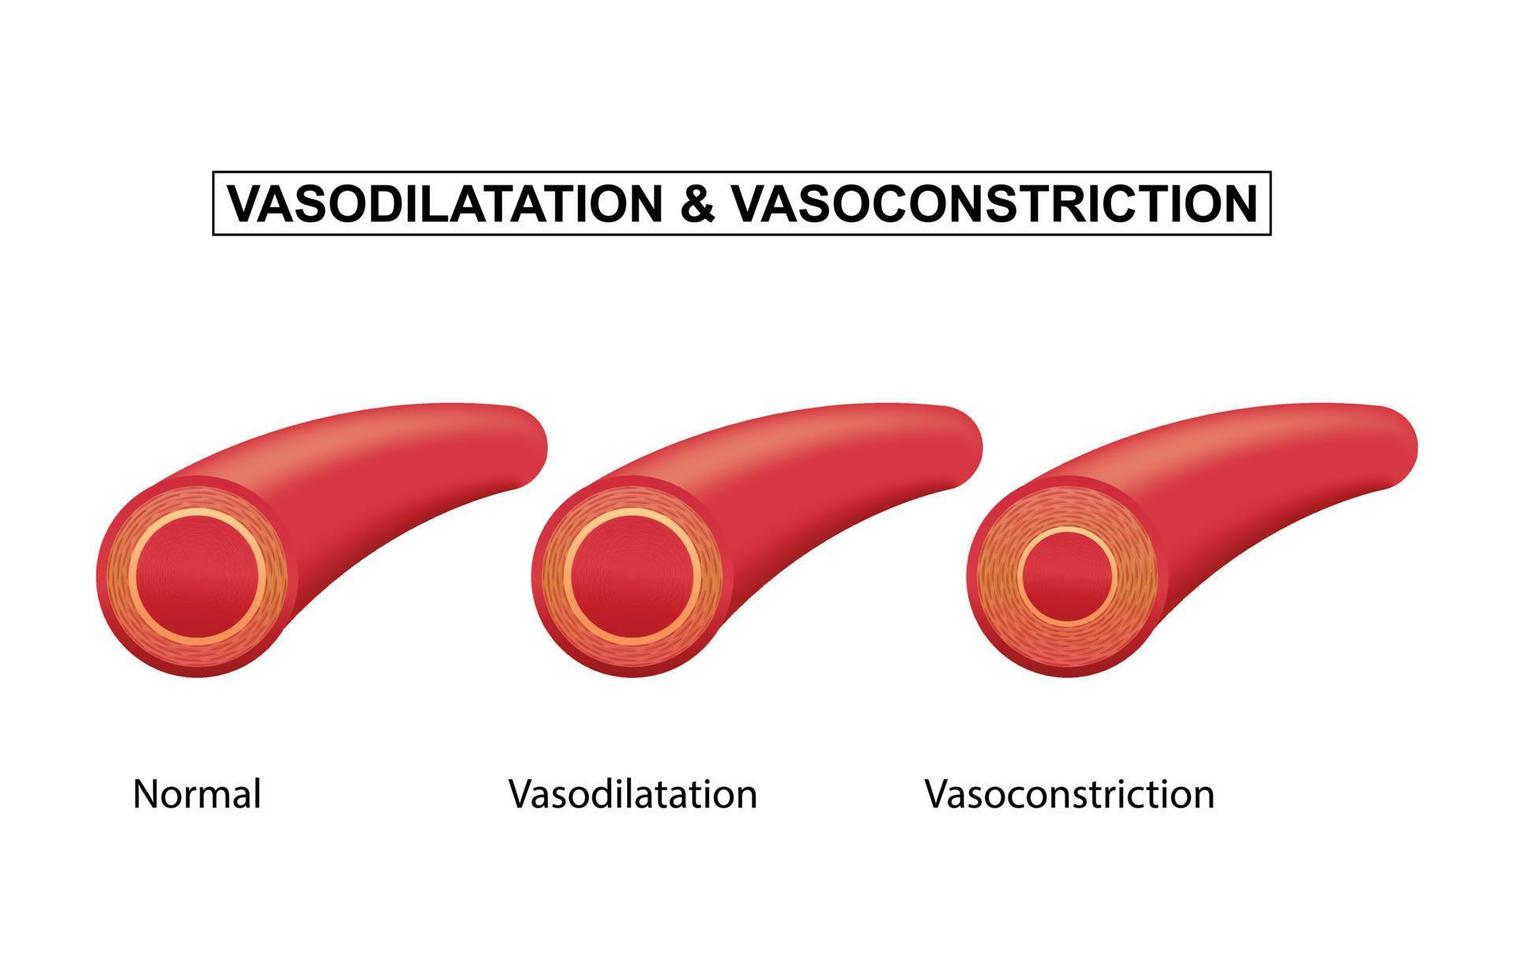 vaso sanguíneo normal, vasodilatação e vasoconstrição, ilustração vetorial vetor